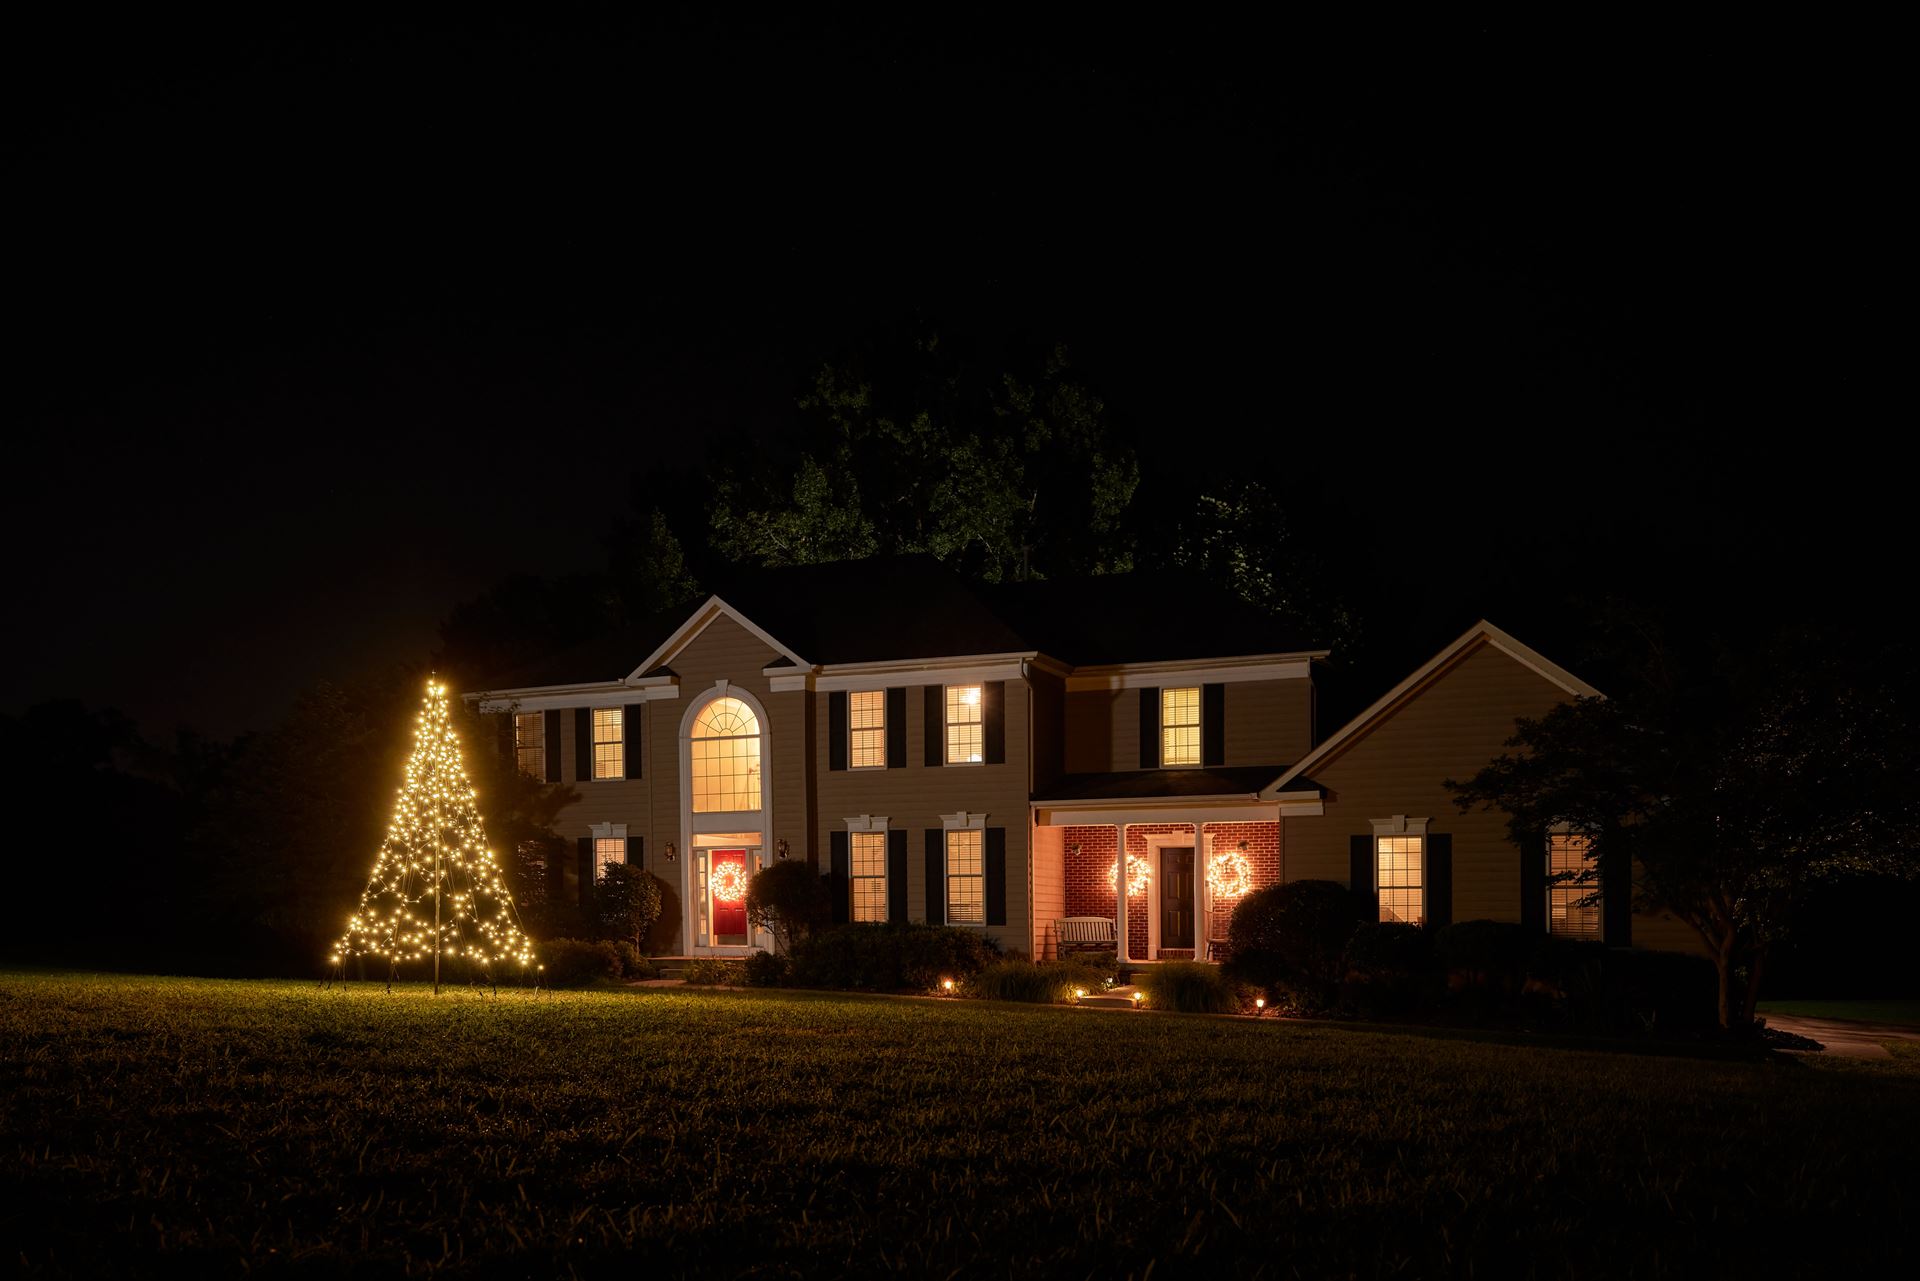 Fairybell-kerstverlichting-kerstboom-buiten-met-vlaggenmast-300CM-hoog-480-LED-lampjes-in-warmwitte-